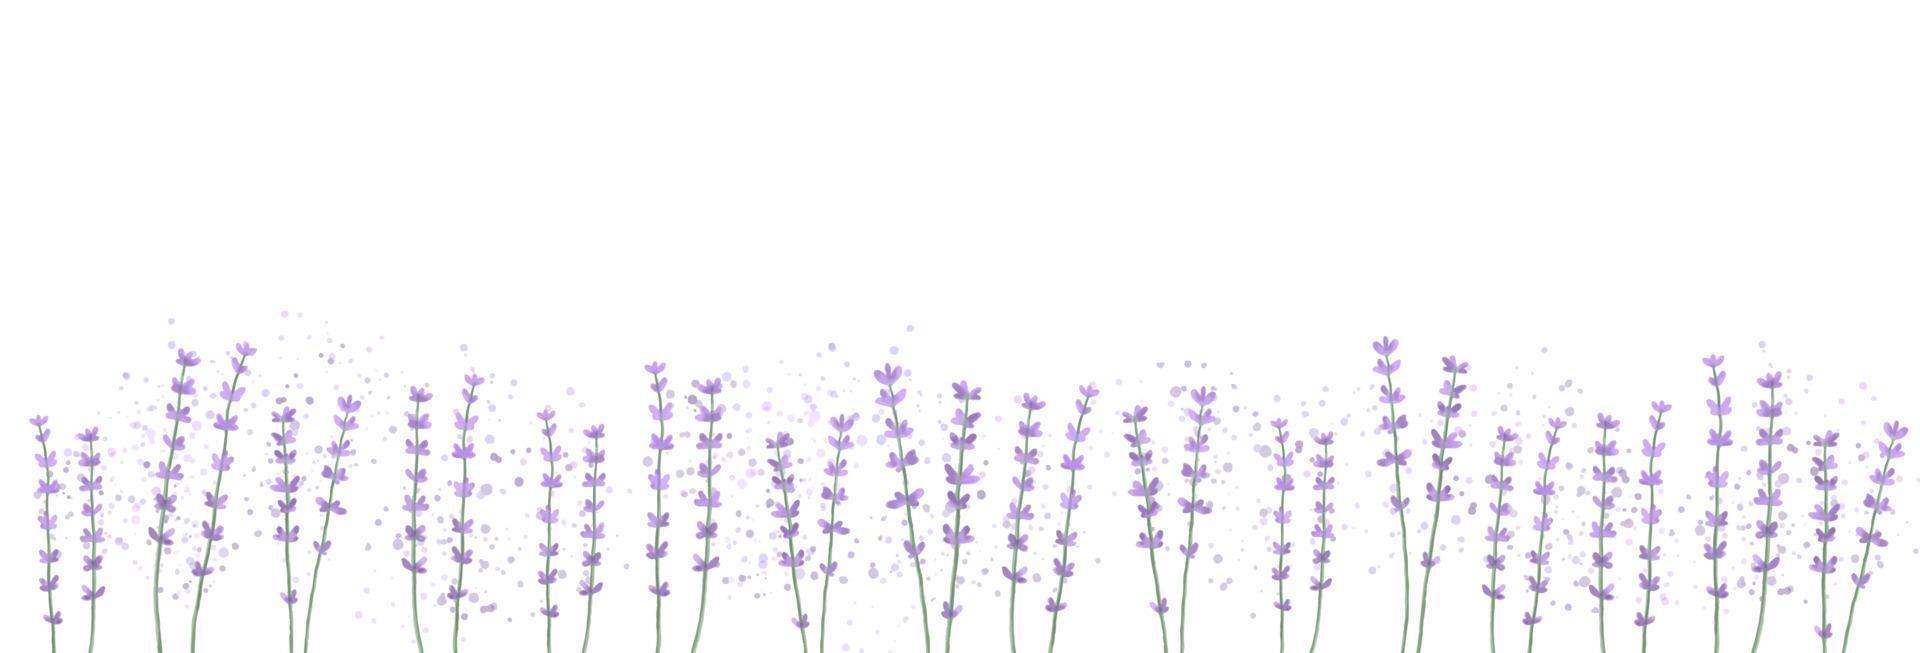 fondo floral horizontal con flores de lavanda. ilustración vectorial de acuarela. vector